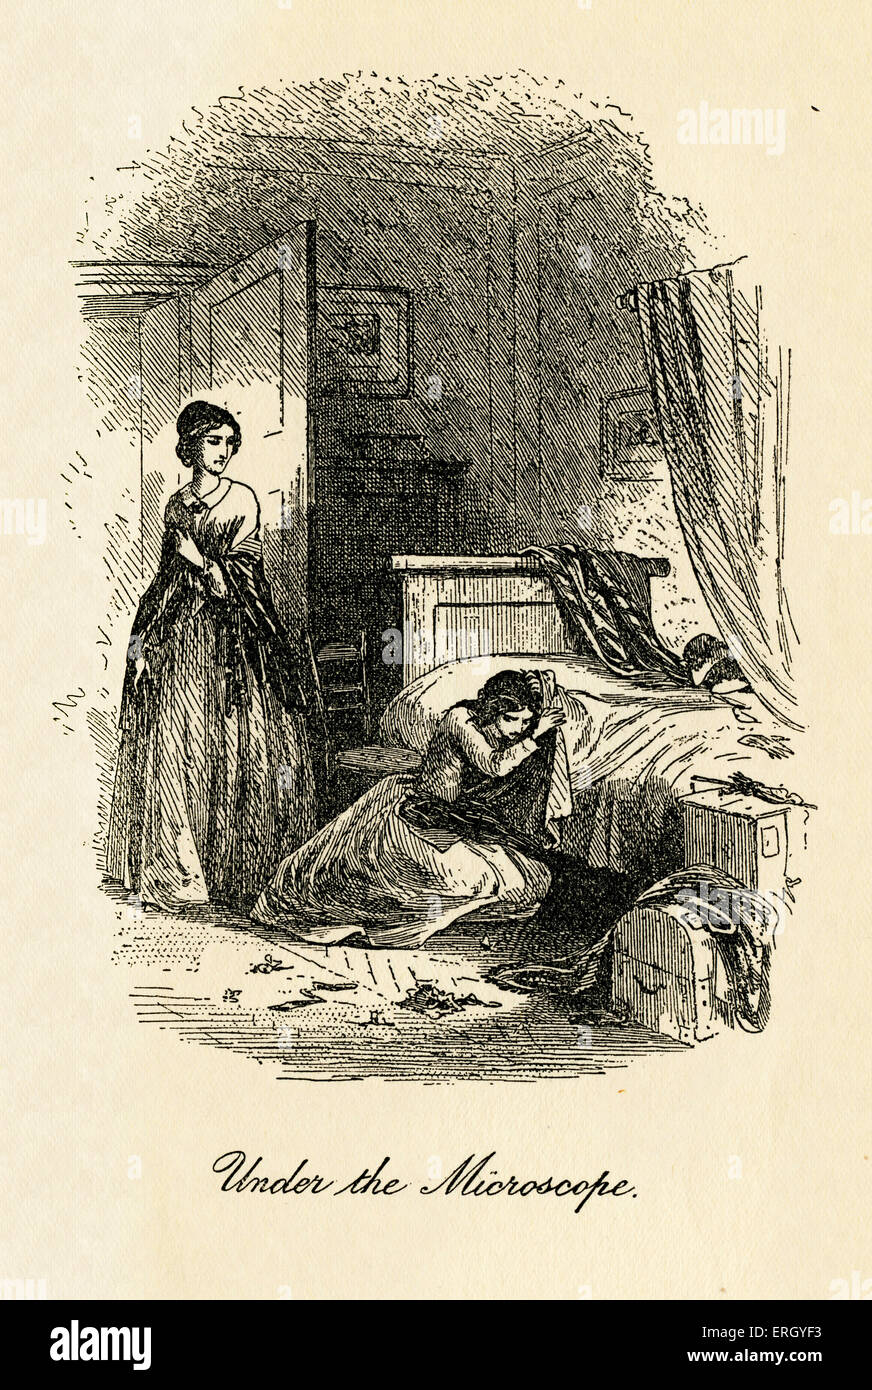 Little Dorrit von Charles Dickens. Illustriert von Hablot Knight Browne. (Phiz) Bildunterschrift lautet: "unter die Lupe genommen".  CD: Stockfoto